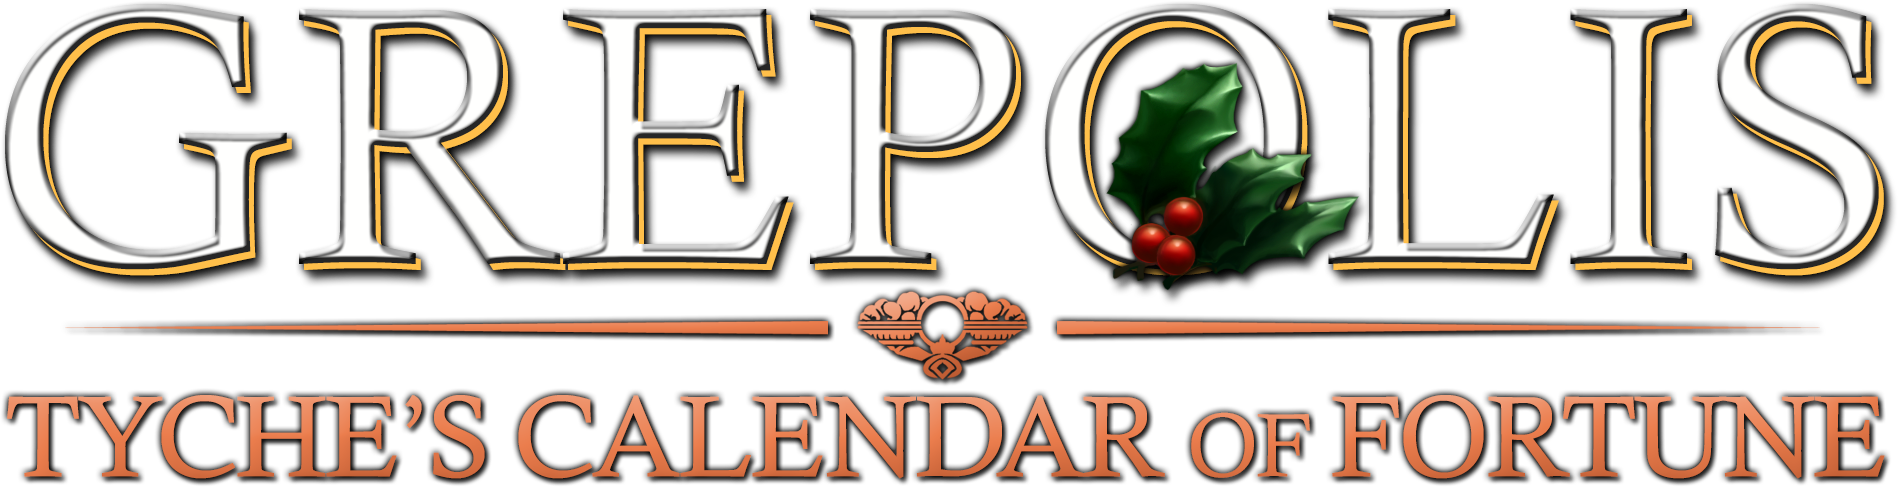 Christmas2013 logo.png